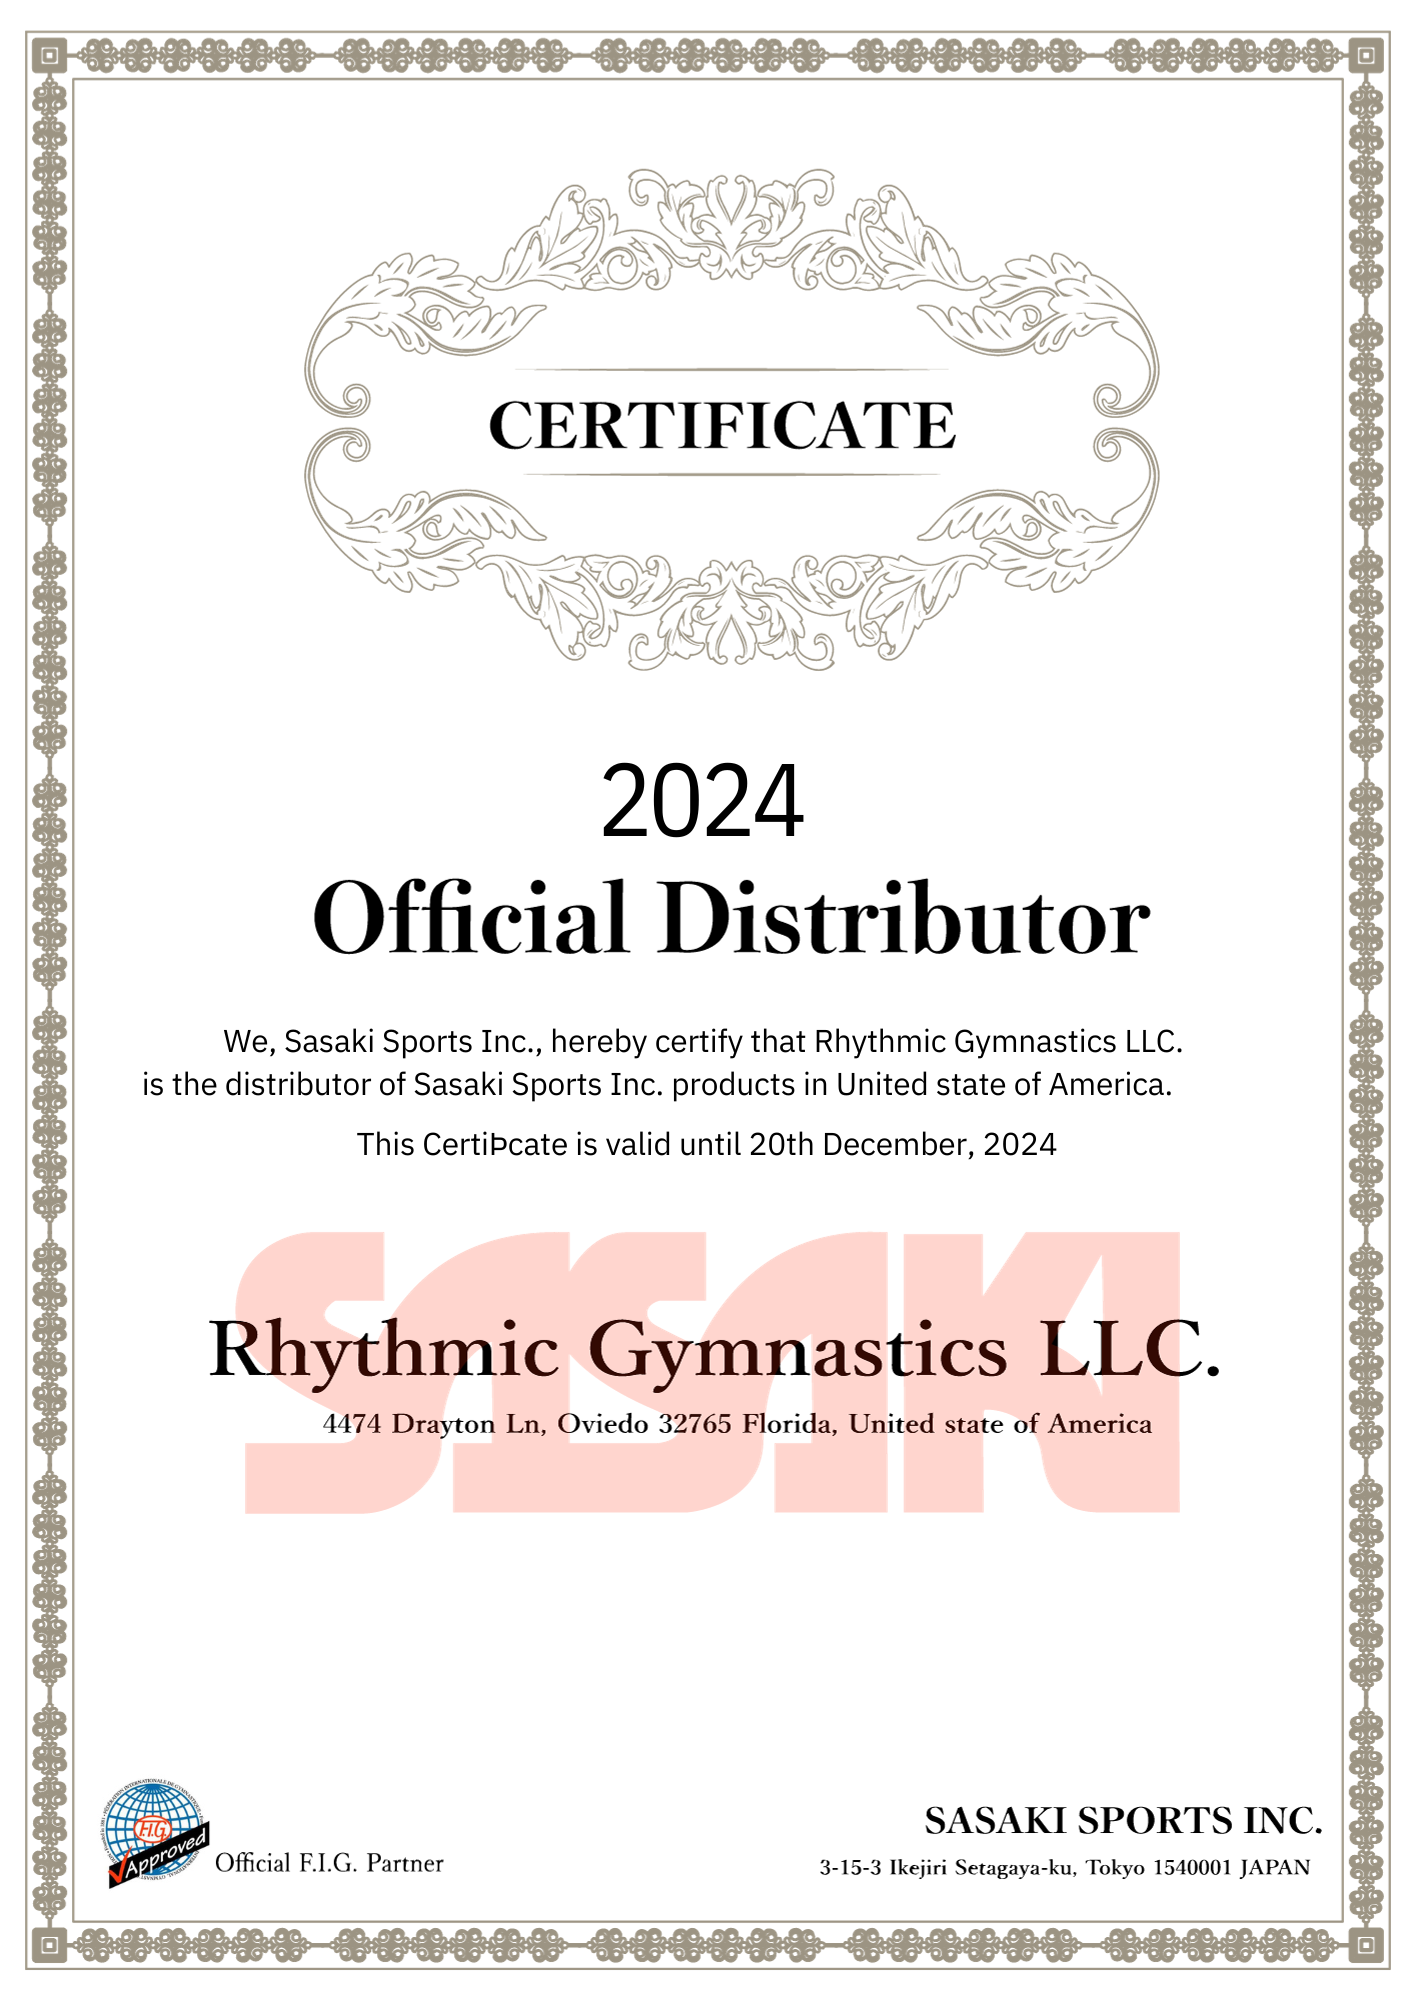 Rhythmic Gymnastics Equipment #rhythicgymnastics #rg #ball #hoop